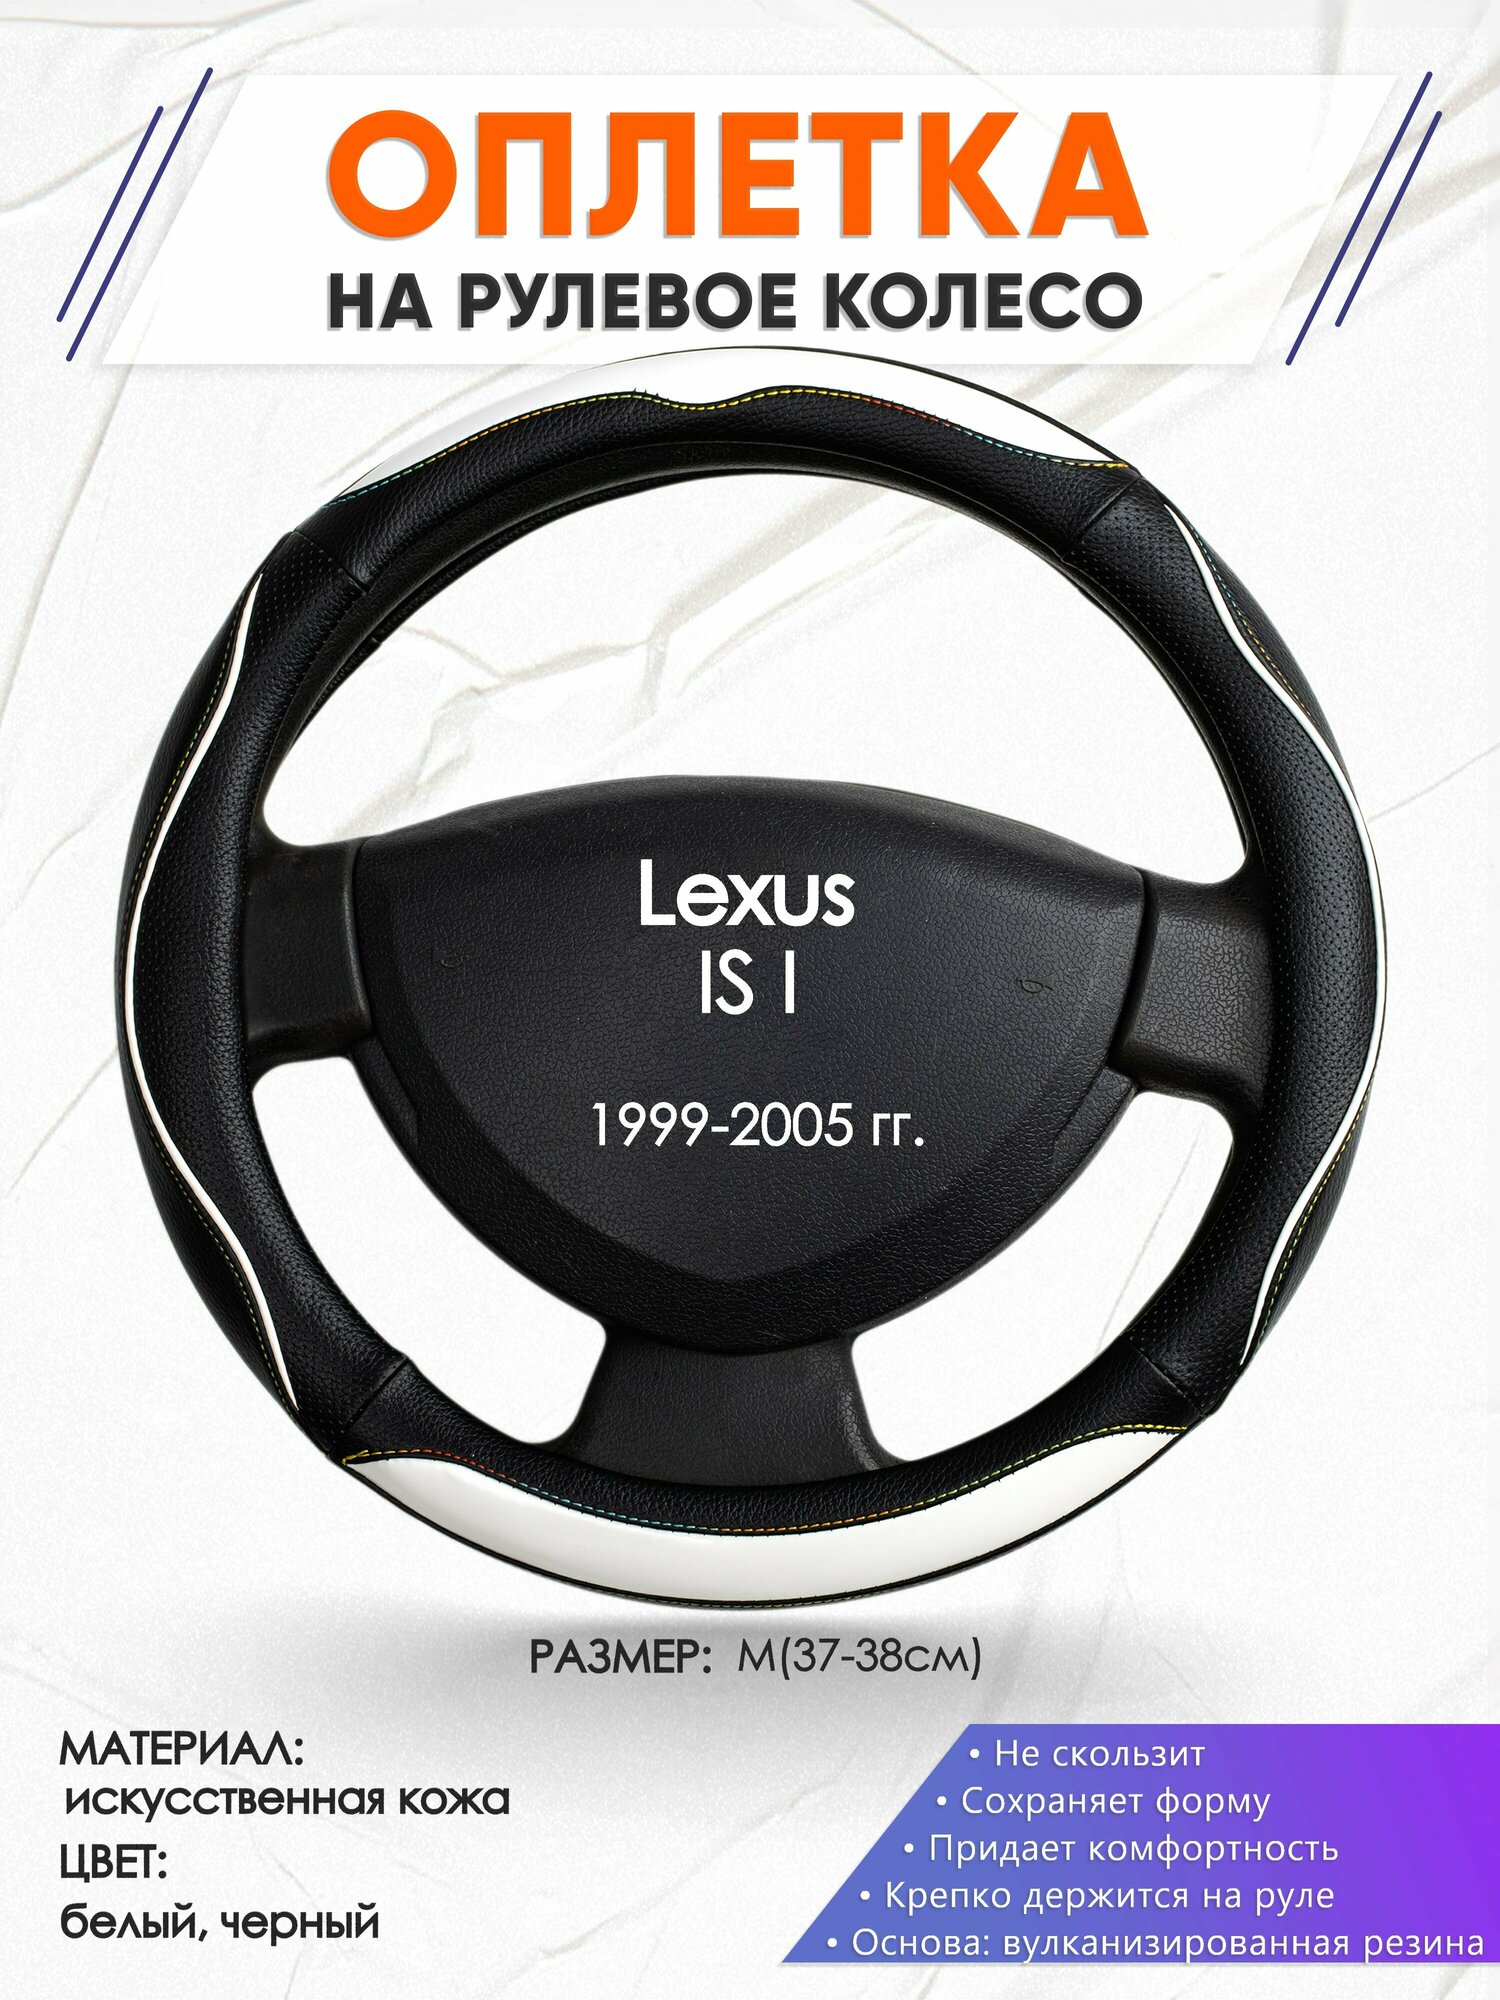 Оплетка наруль для Lexus IS I(Лексус ИС 1) 1999-2005 годов выпуска, размер M(37-38см), Искусственная кожа 75